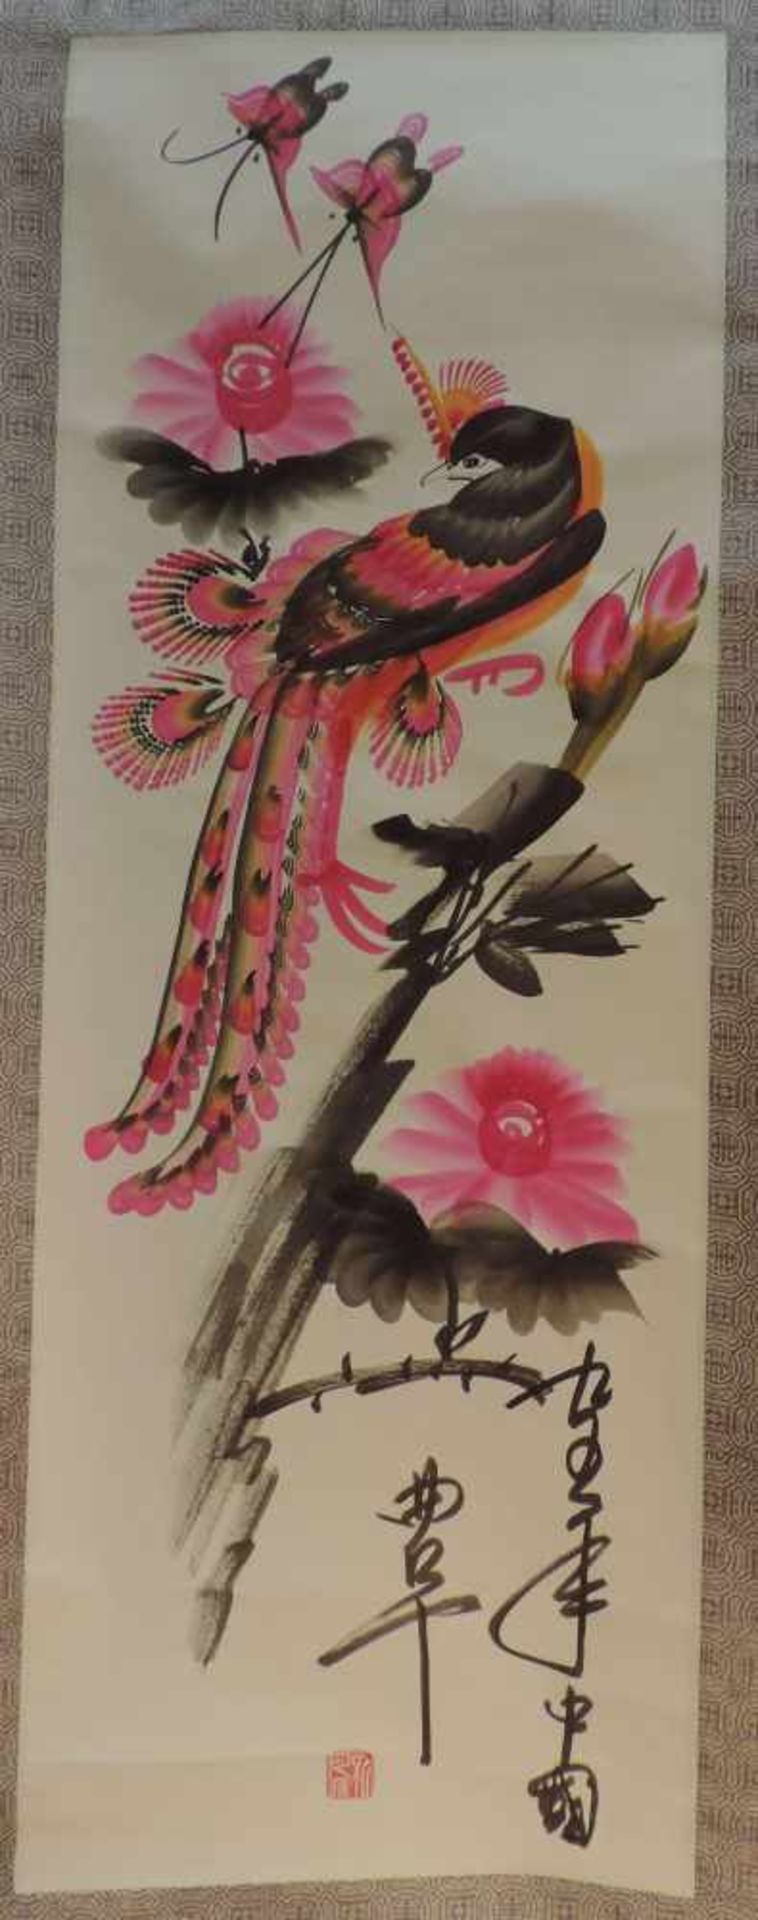 KALIGRAPHIE, Japan, Papierrolle mit Kurzgedicht, Vogel,schwarz/pink, B 48,5